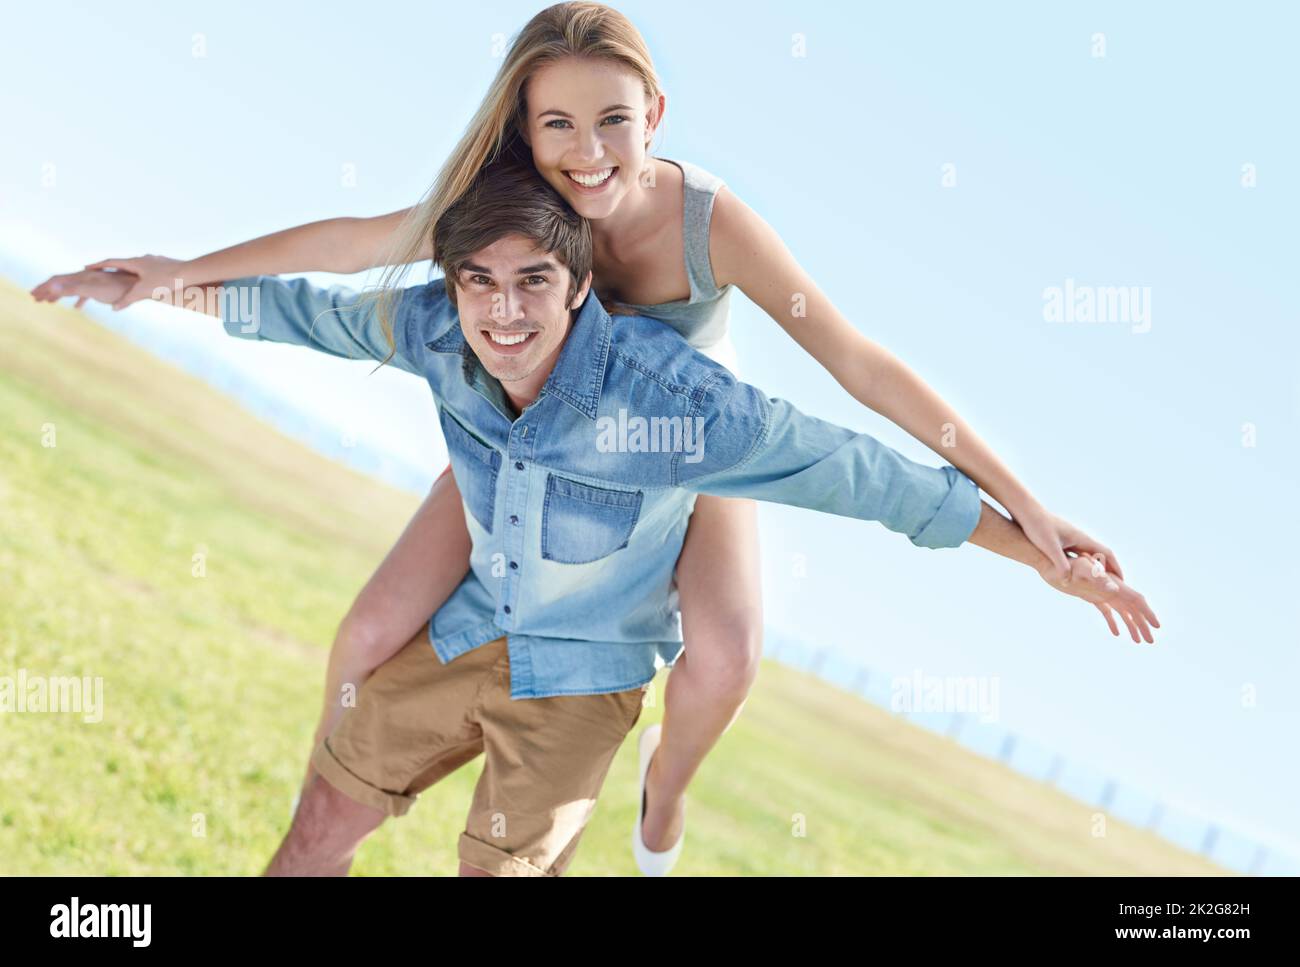 Ahhhhh, junge Liebe. Ein verspieltes junges Paar, das einen schönen Tag im Freien genießt. Stockfoto